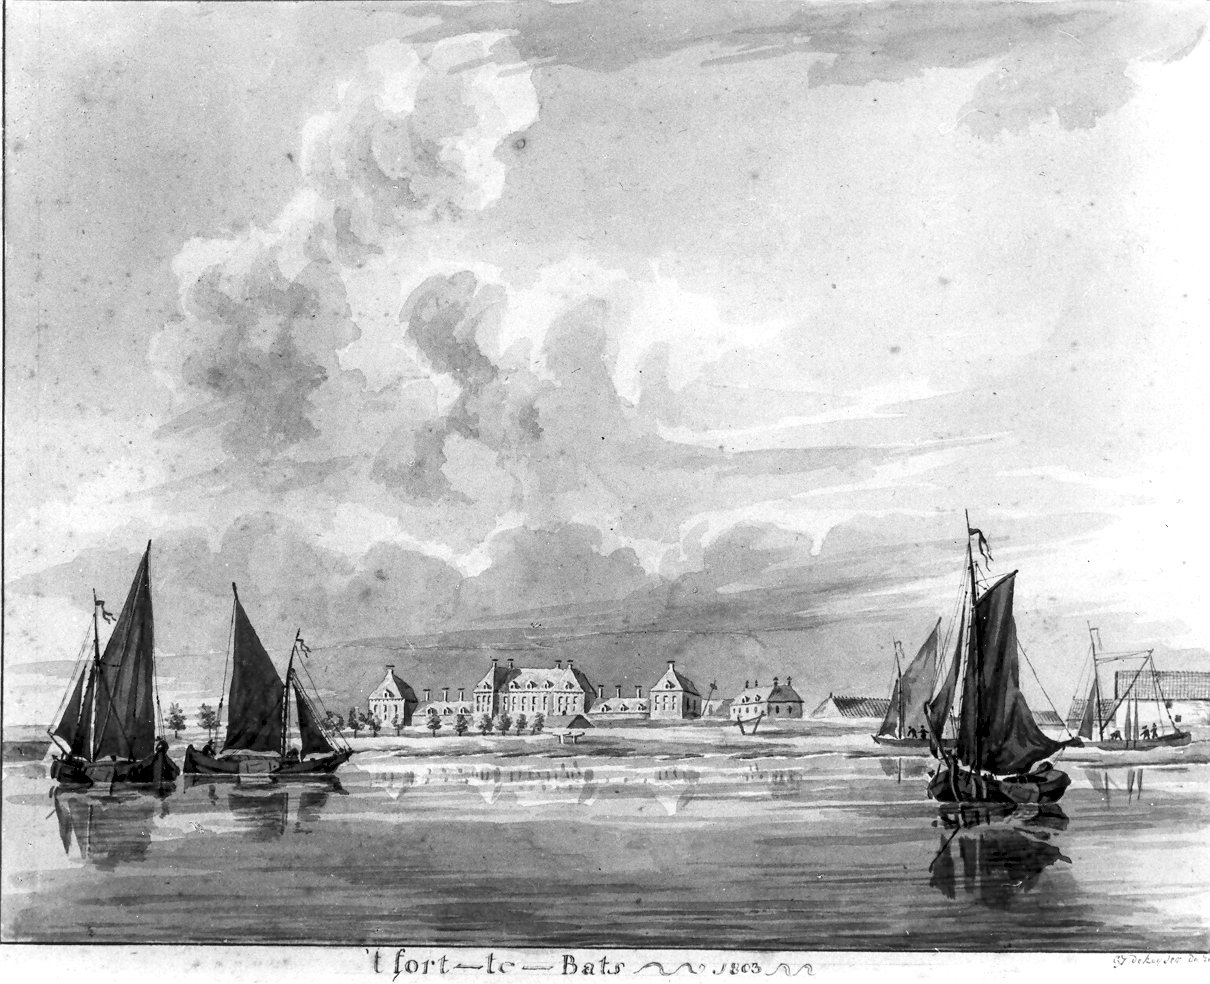 Fort Bath gezien vanaf de Westerschelde, 1803.